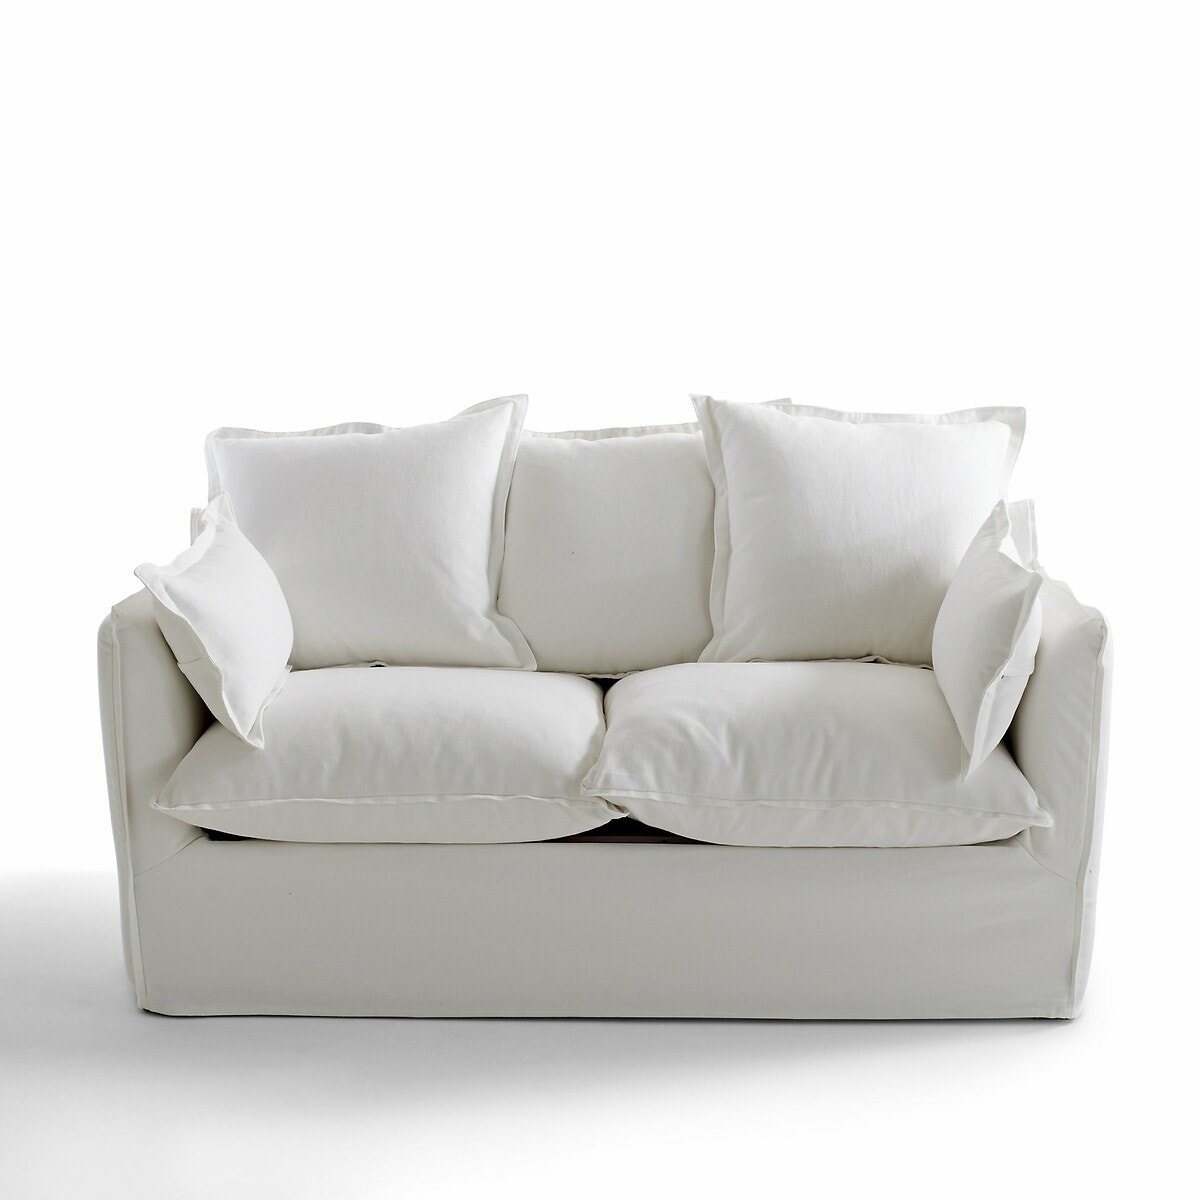 Πτυσσόμενος καναπές-κρεβάτι από βαμβάκι και λινό με τεχνολογία Bultex, Odna